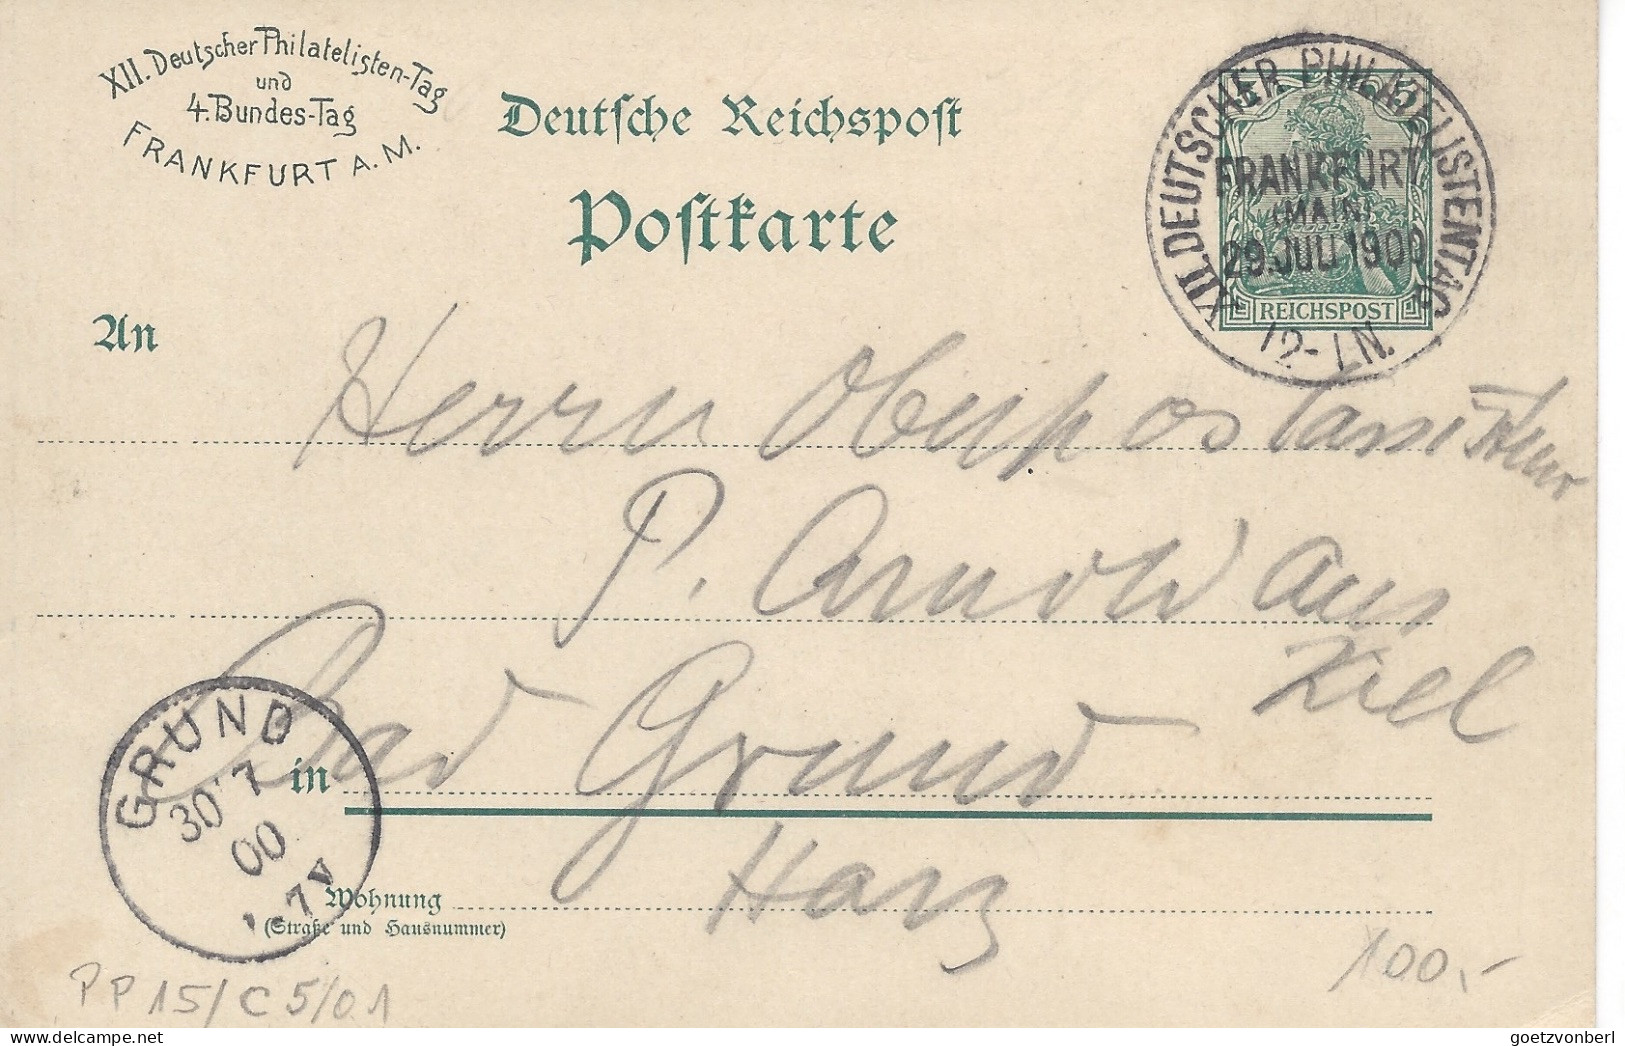 Frankfurt Am Main, XII Deutscher Philatelistentag Und IV Bundestag In 1900 - Postcards